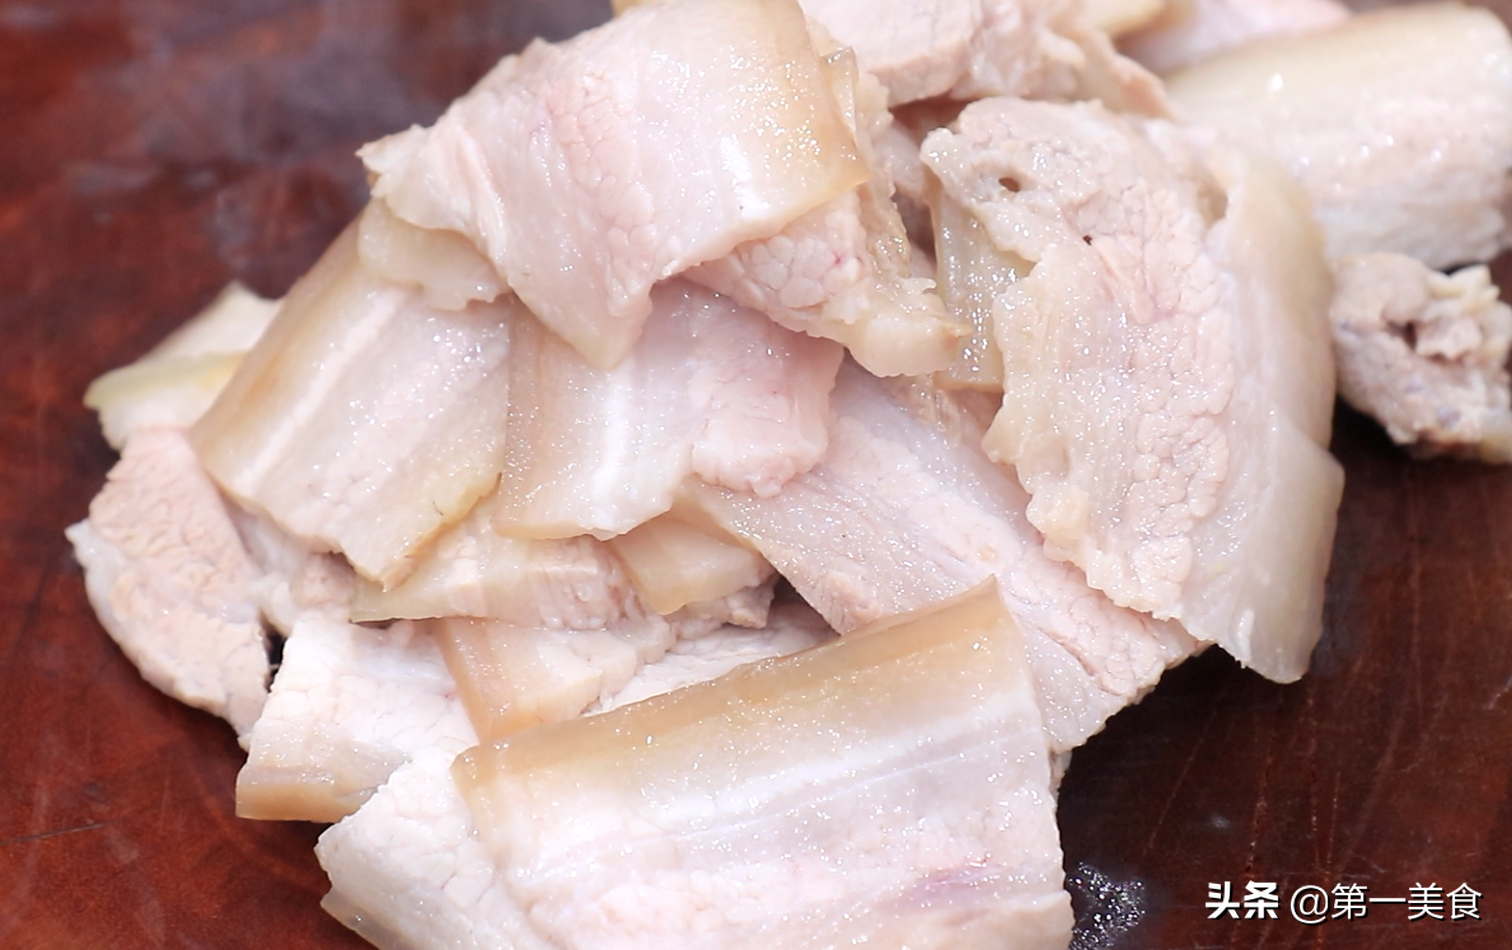 酸菜炖肉直接下锅绝对又腥又苦！正确做法要提前处理酸菜和肉